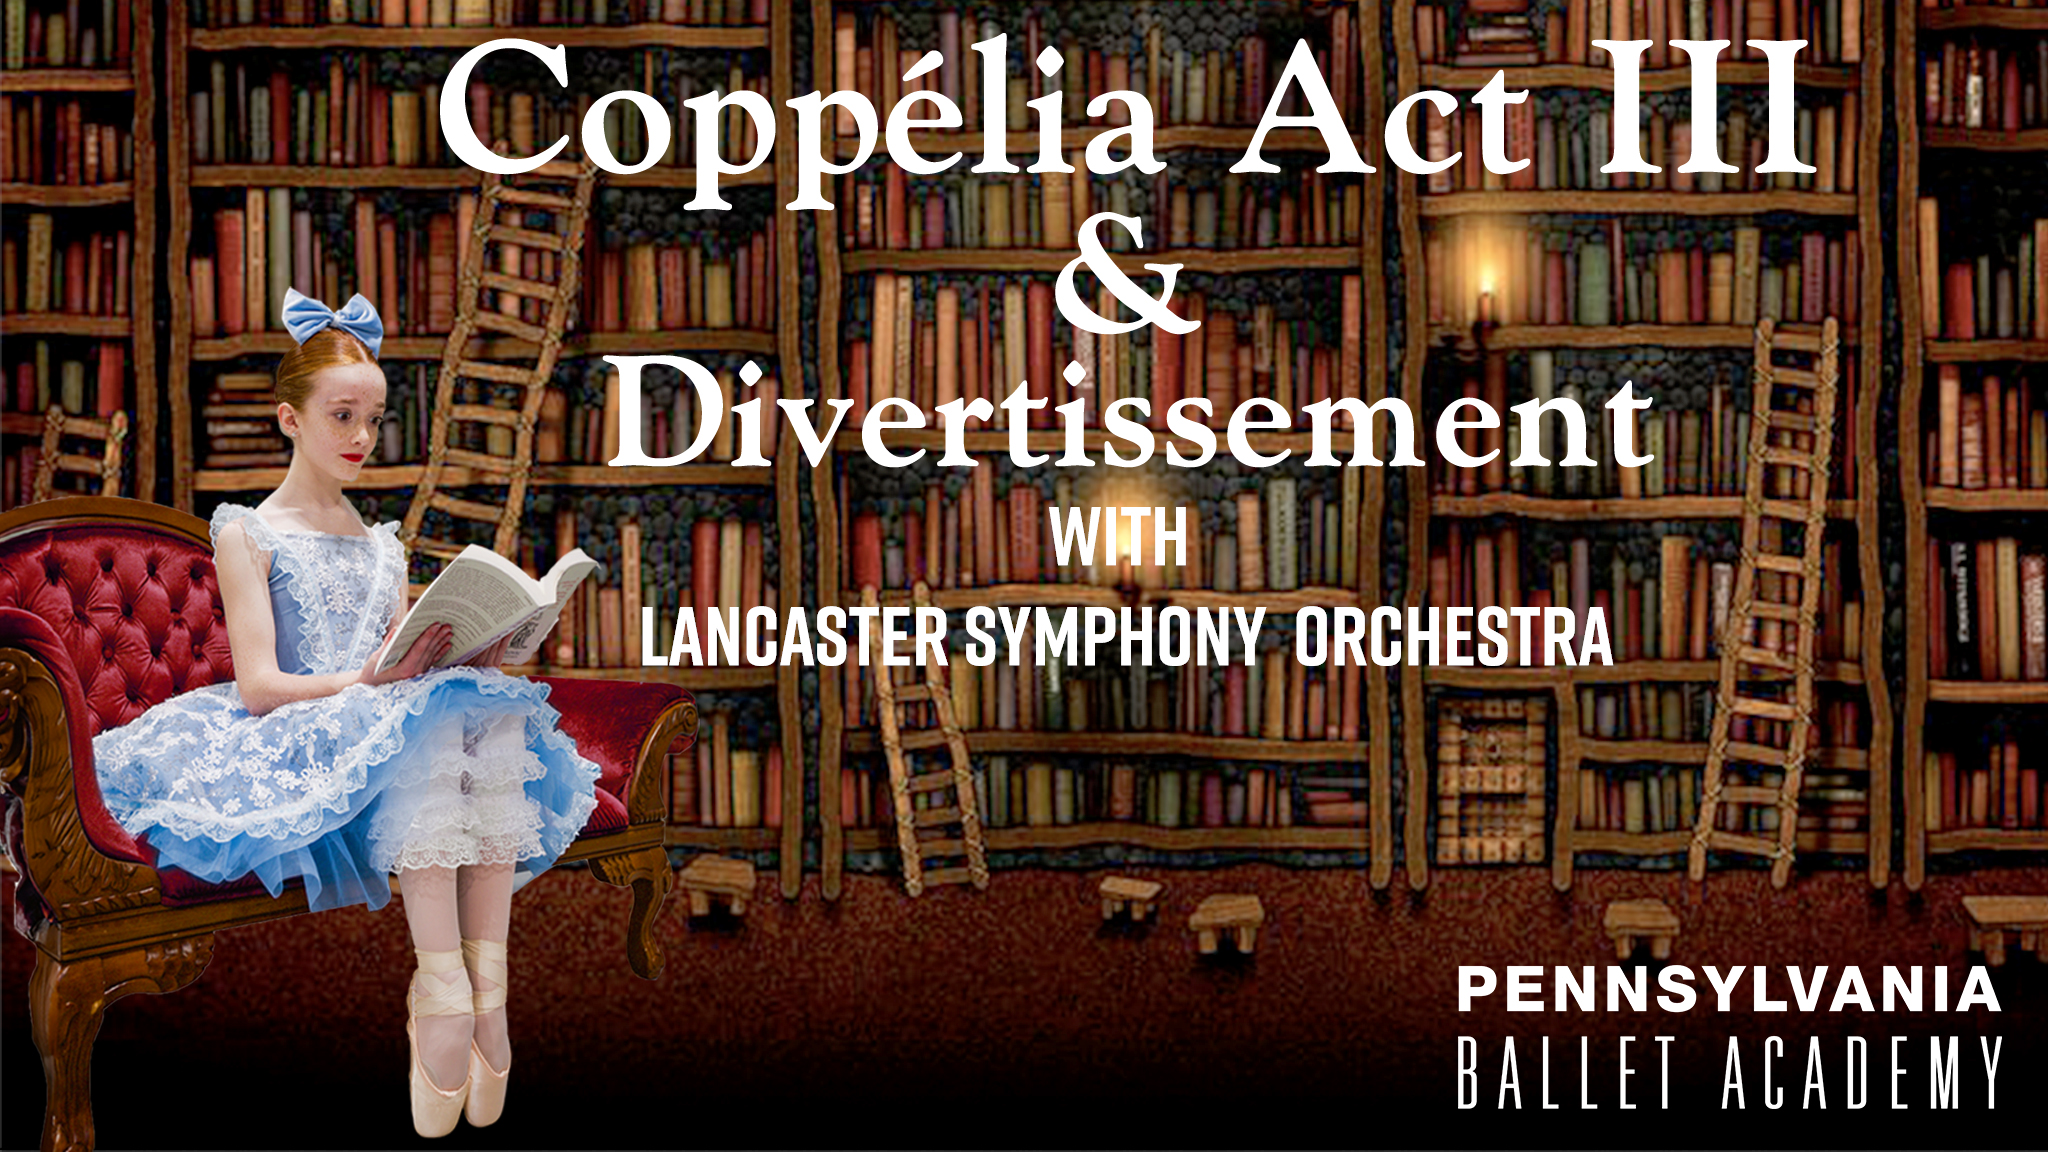 The Pennsylvania Ballet Academy presents Coppelia Act III & Divertissement